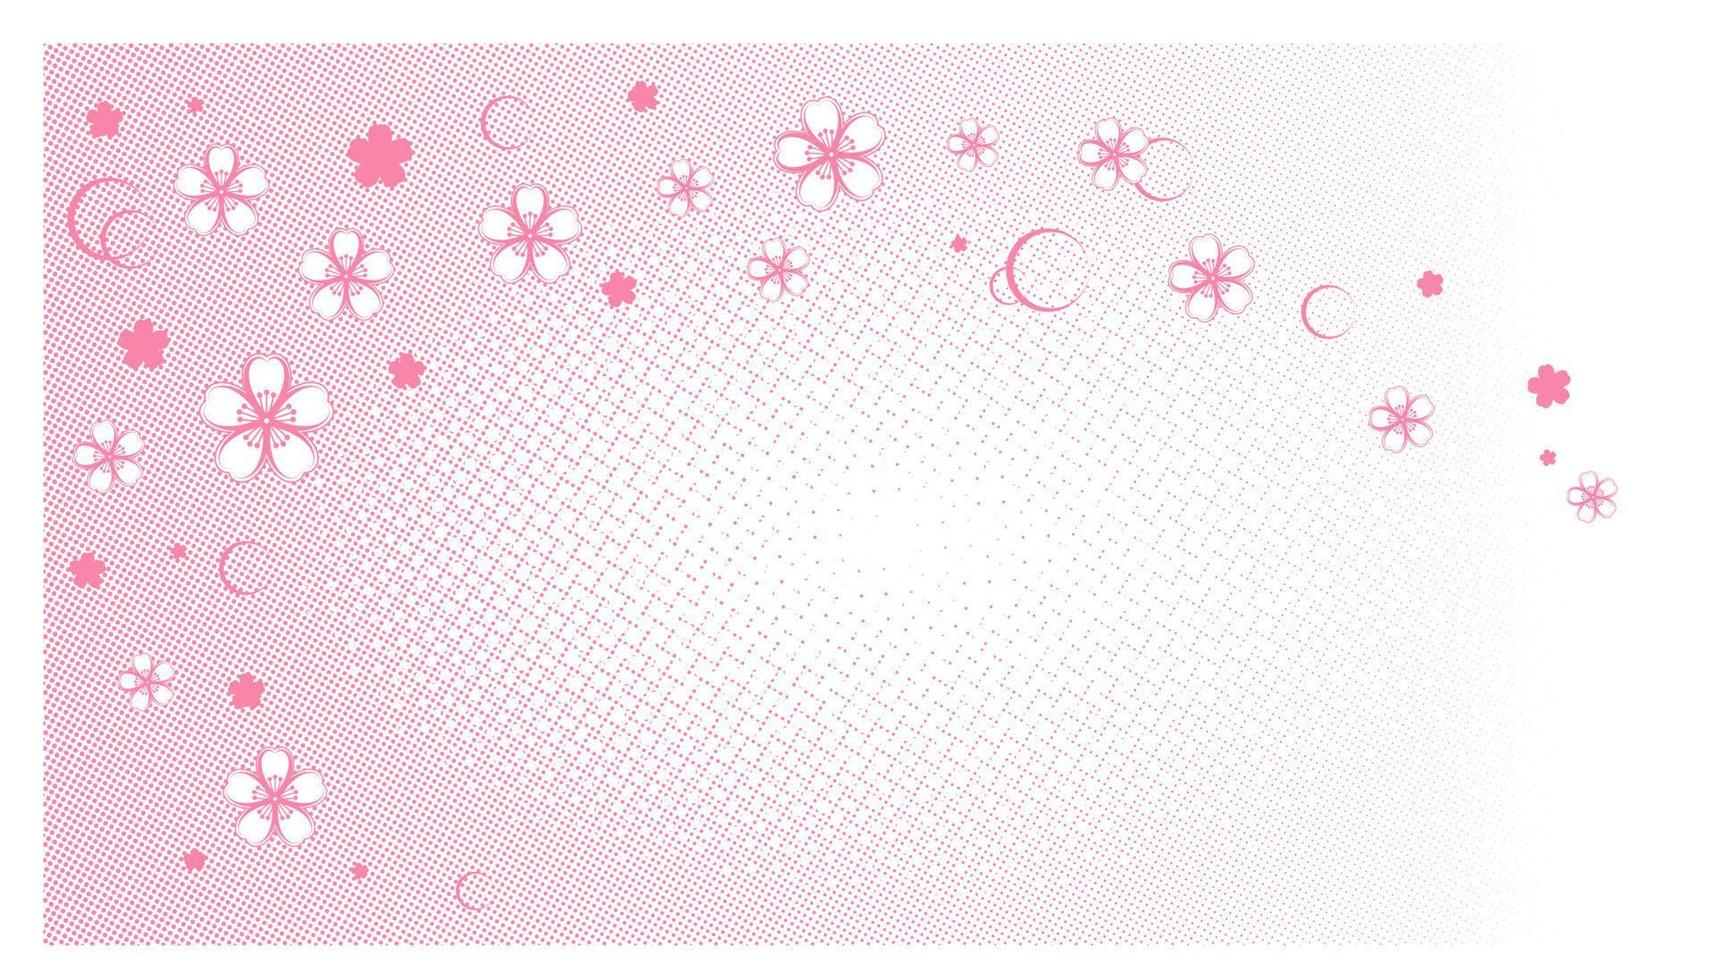 sfondo rosa colorato mezzitoni con fiori di sakura in stile manga e fumetto. vettore